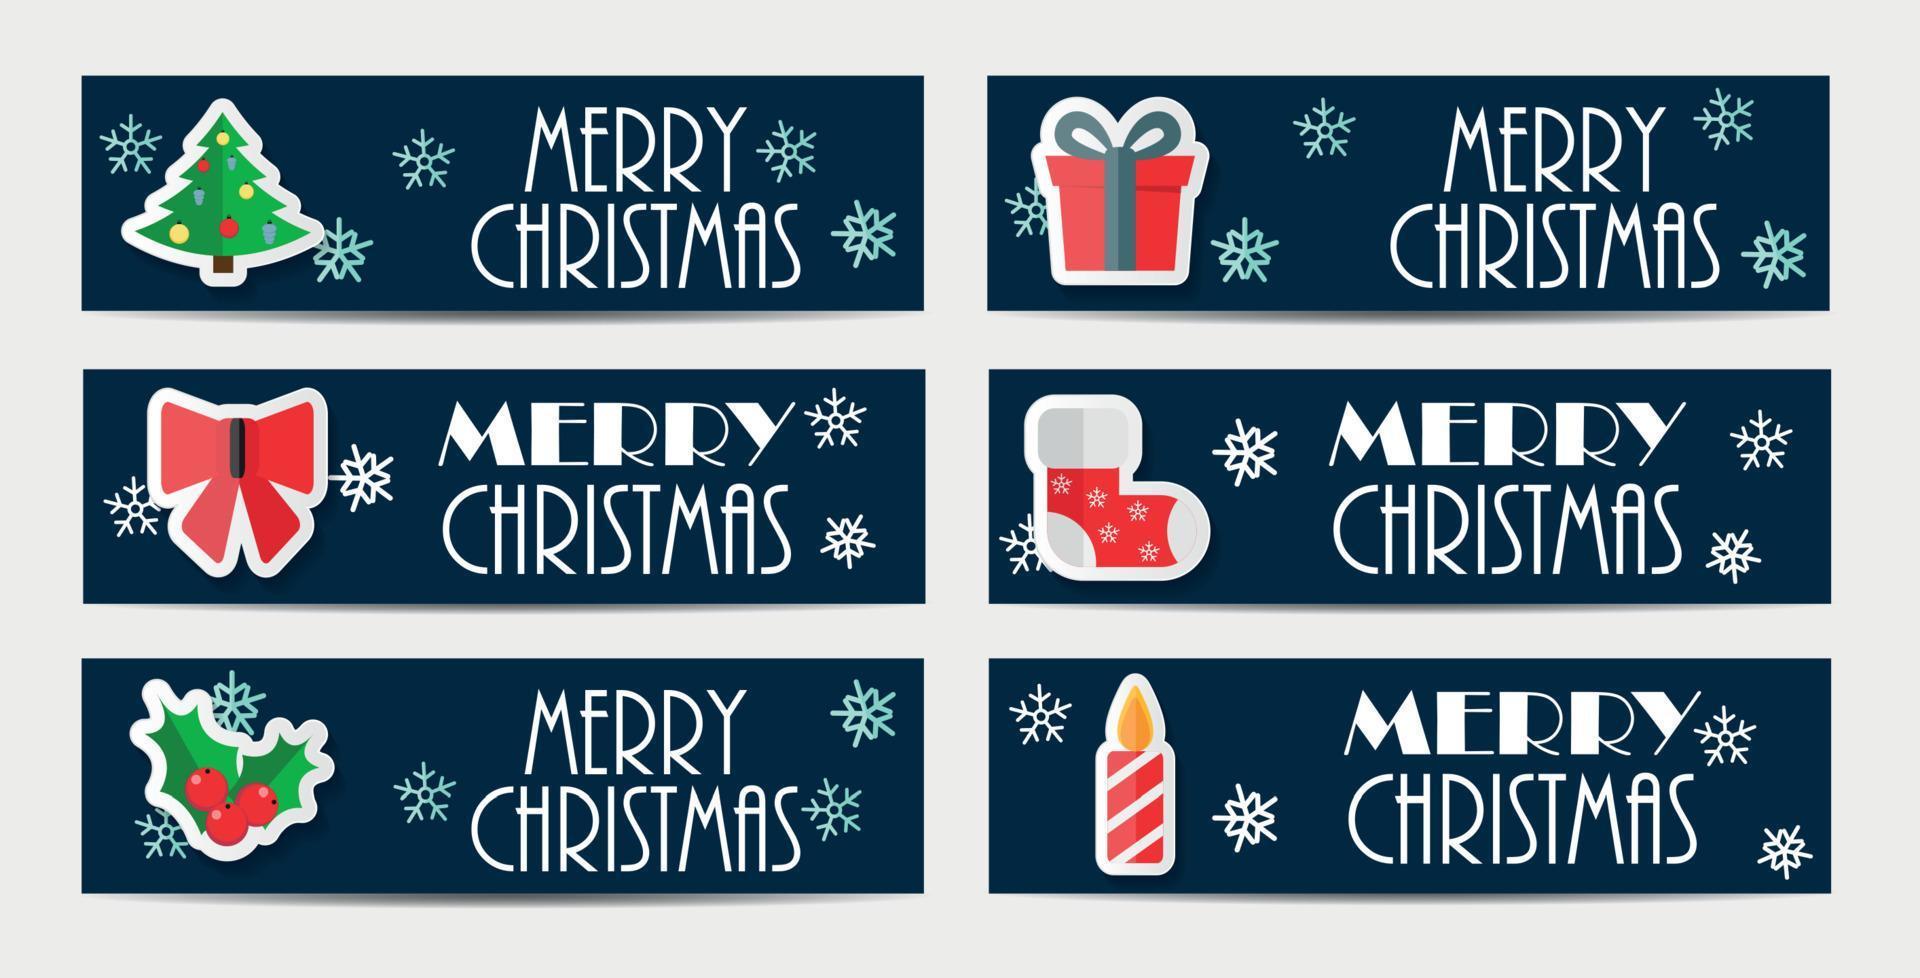 Bannière de site Web de flocons de neige de Noël et illustration vectorielle de fond de carte vecteur